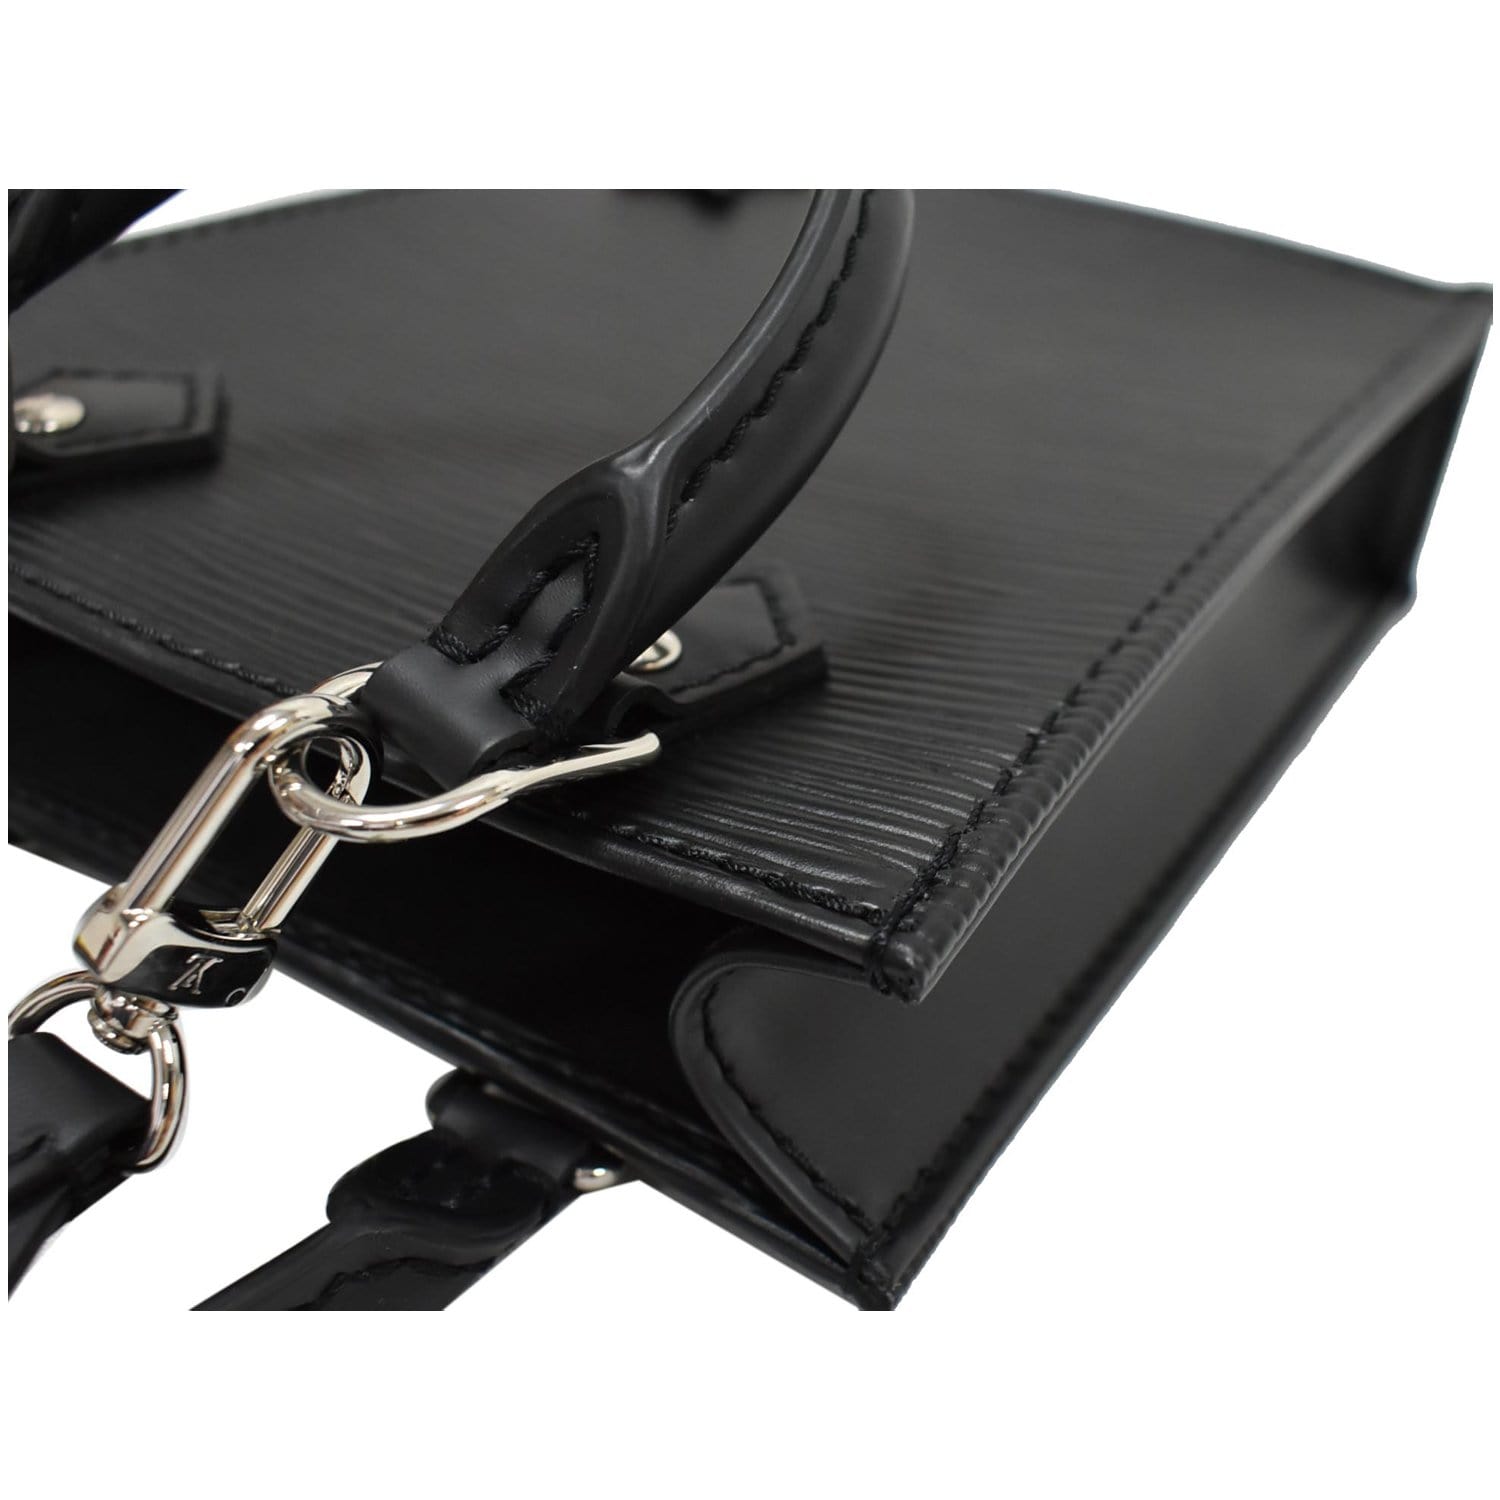 Louis Vuitton Epi Leather Petit Sac Plat Shoulder Bag, Louis Vuitton  Handbags